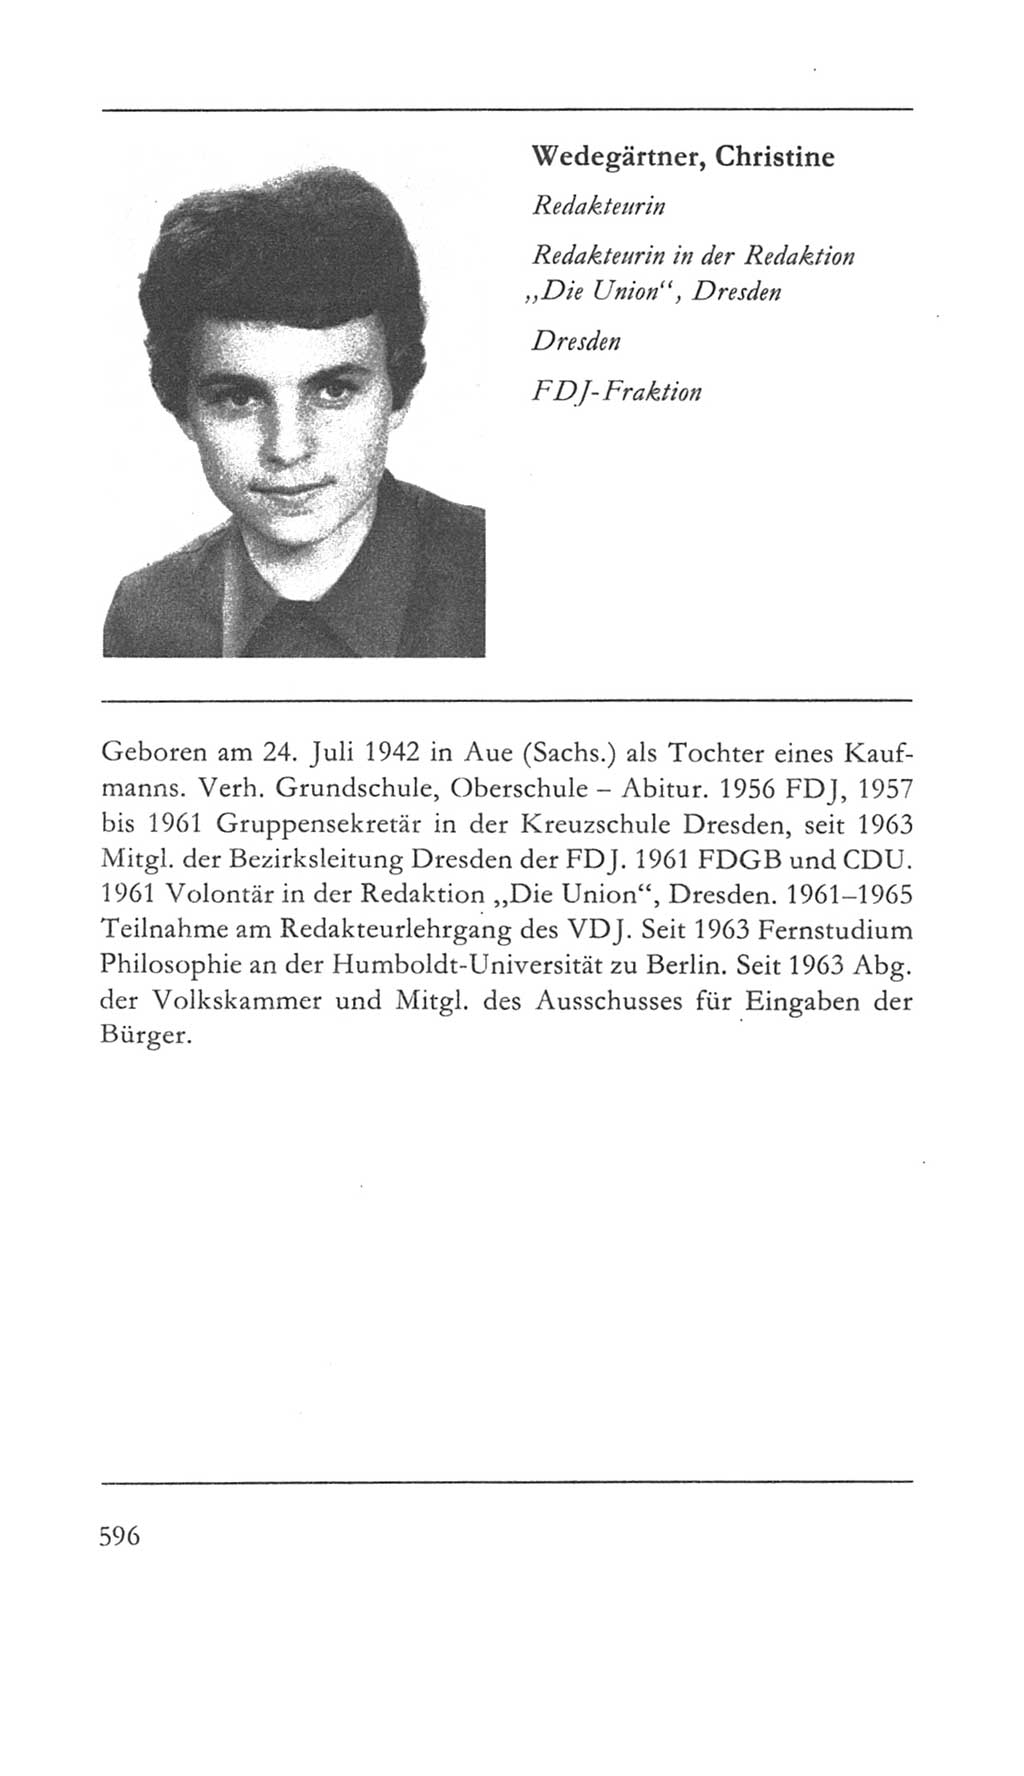 Volkskammer (VK) der Deutschen Demokratischen Republik (DDR) 5. Wahlperiode 1967-1971, Seite 596 (VK. DDR 5. WP. 1967-1971, S. 596)